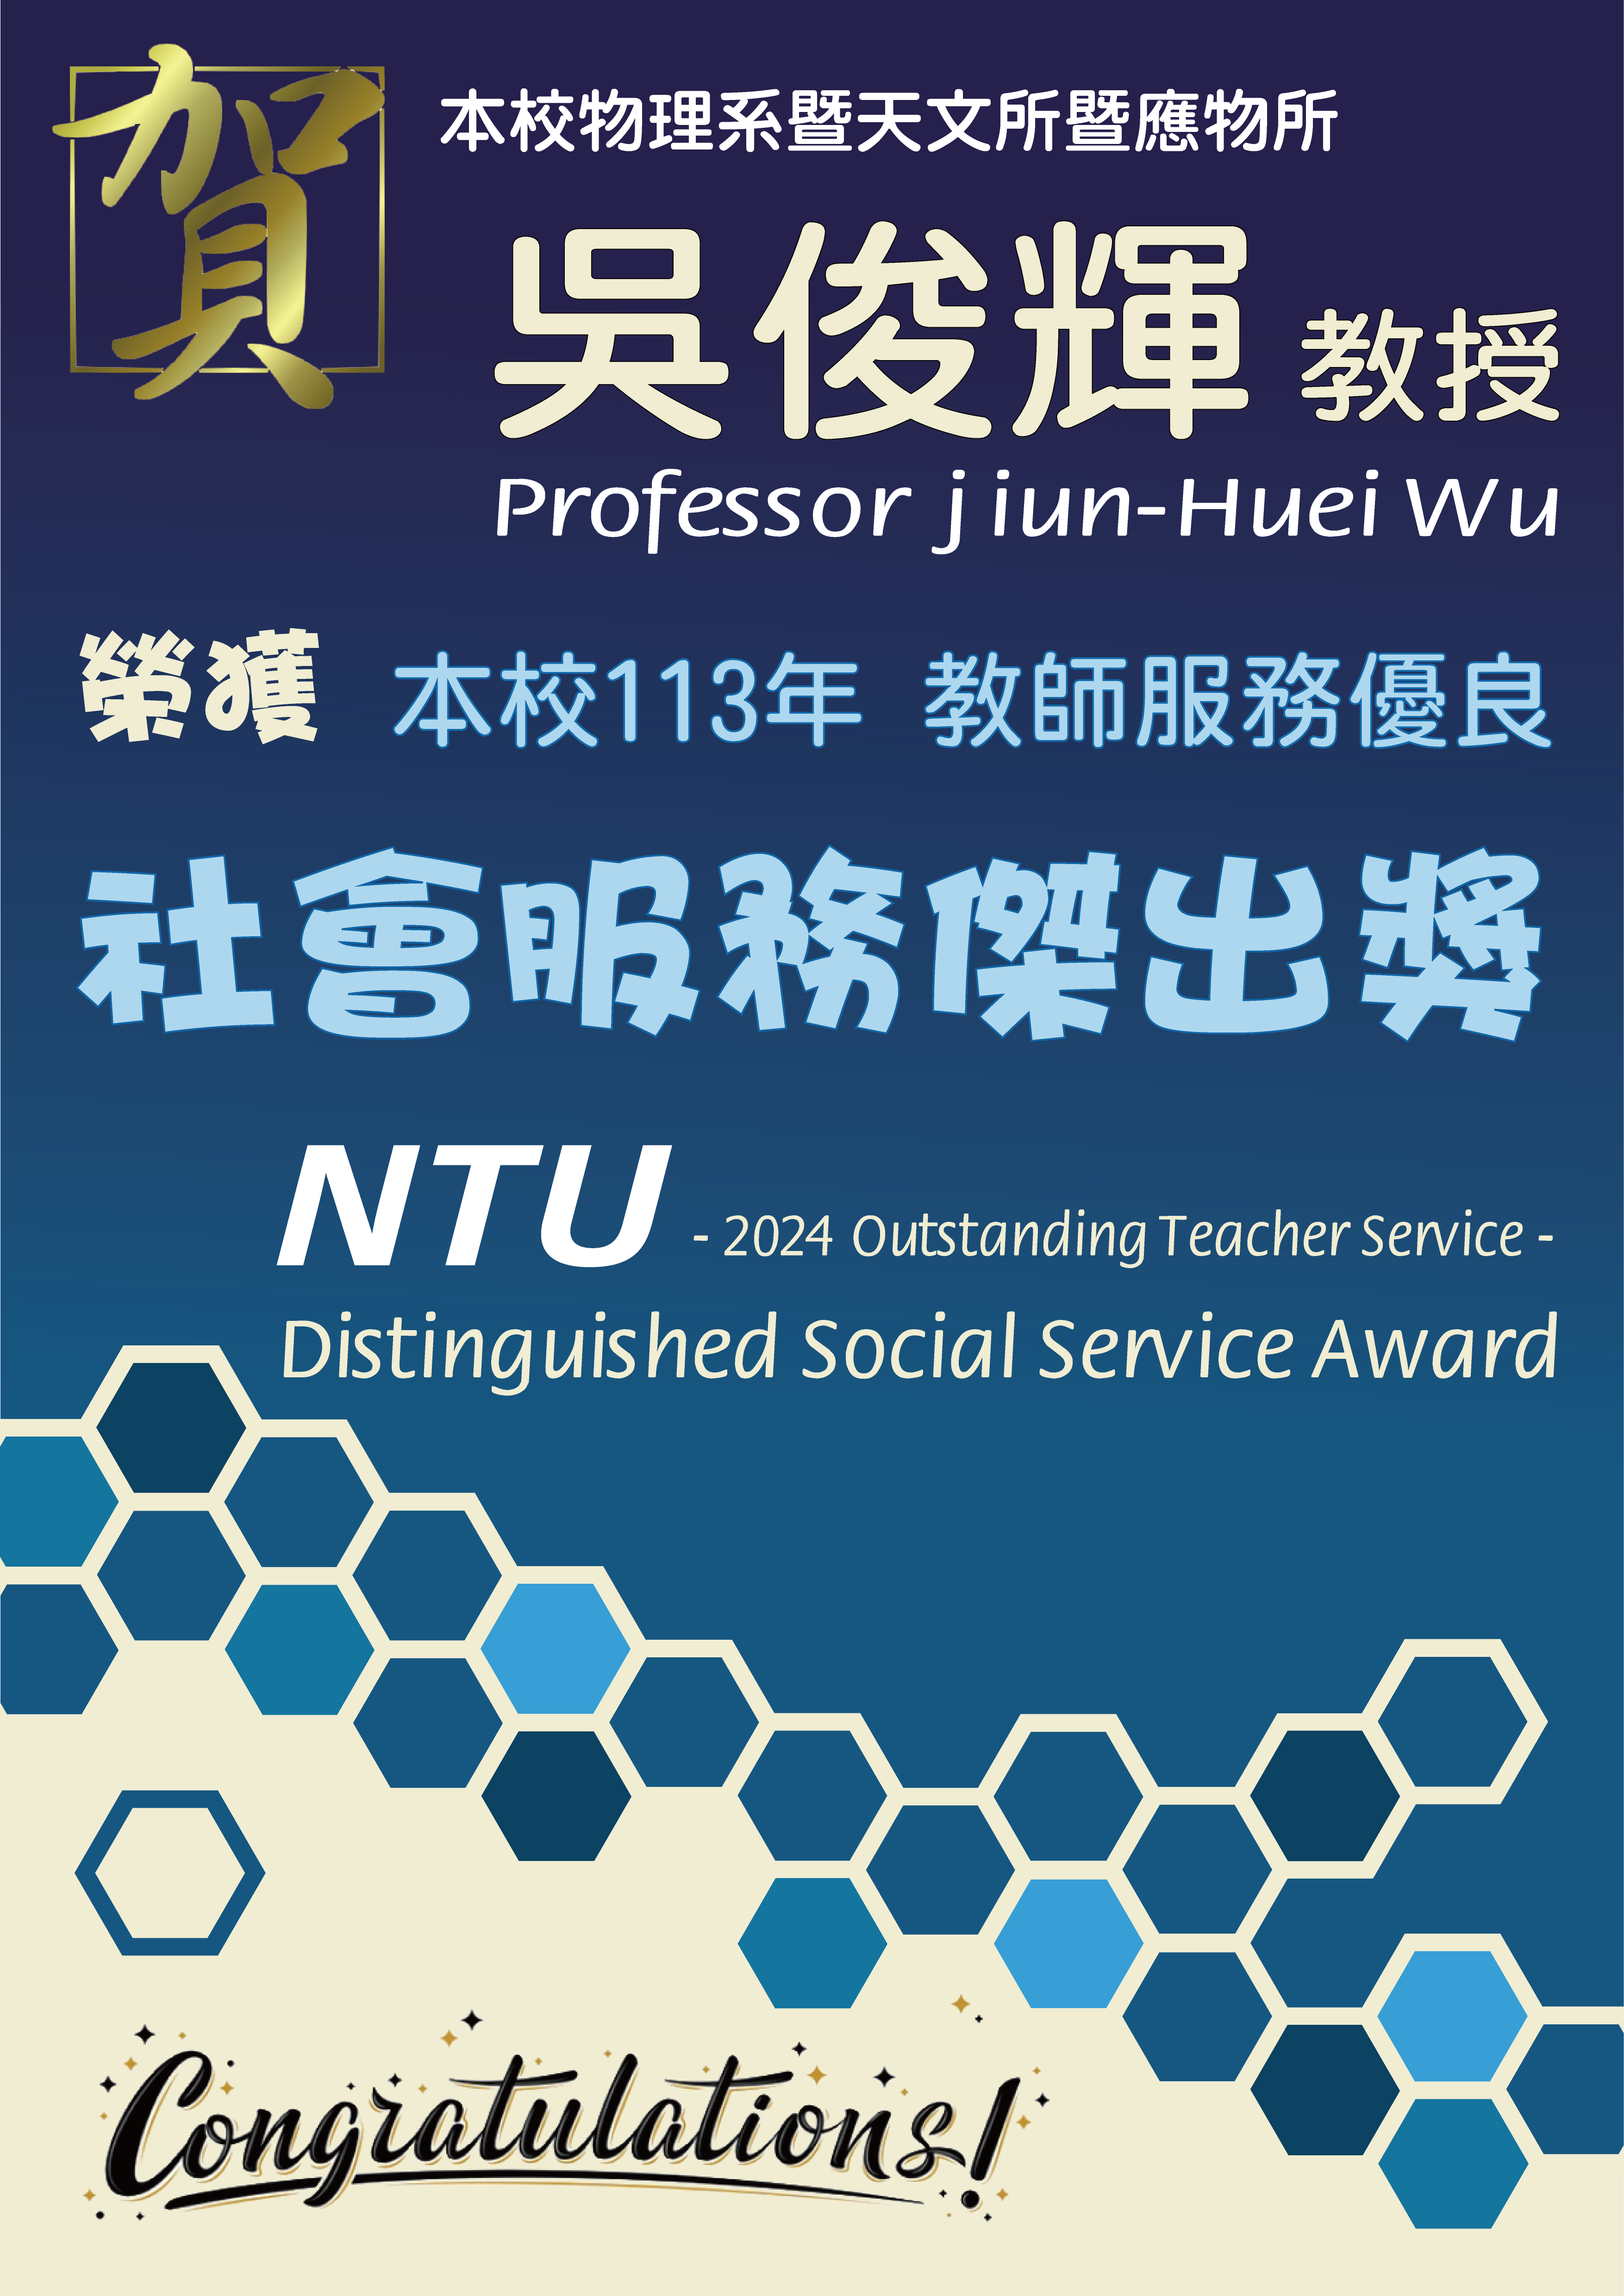 《賀》本系 吳俊輝 教授 Prof. Jiun-Huei Wu 榮獲 本校 113年《社會服務優良獎》(NTU Distinguished Social Service Award)